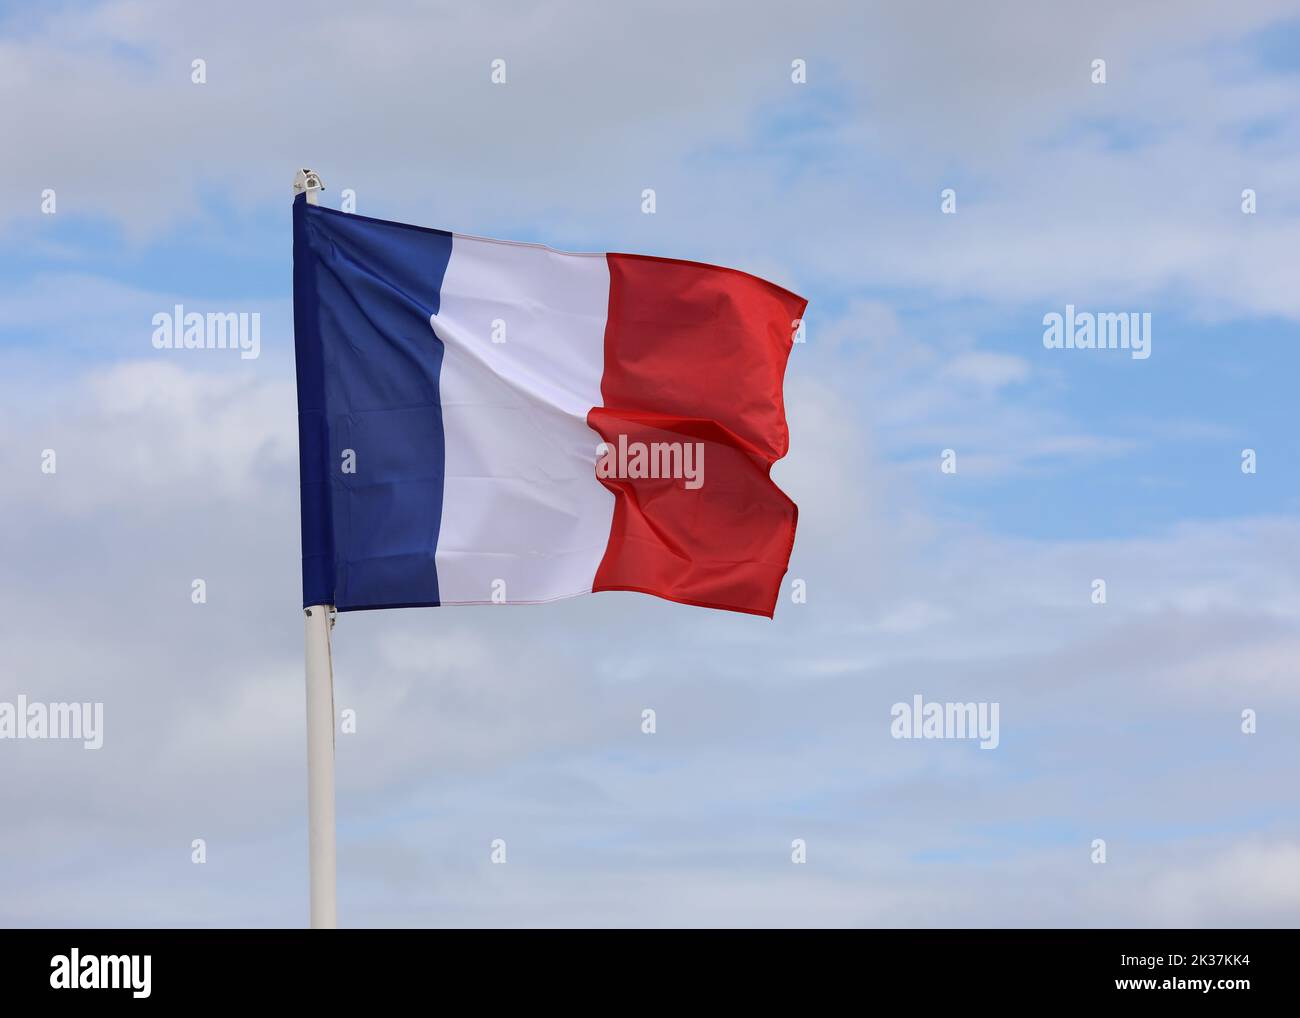 La Gran Bandera Francesa ondulaba en el cielo azul sin gente Foto de stock